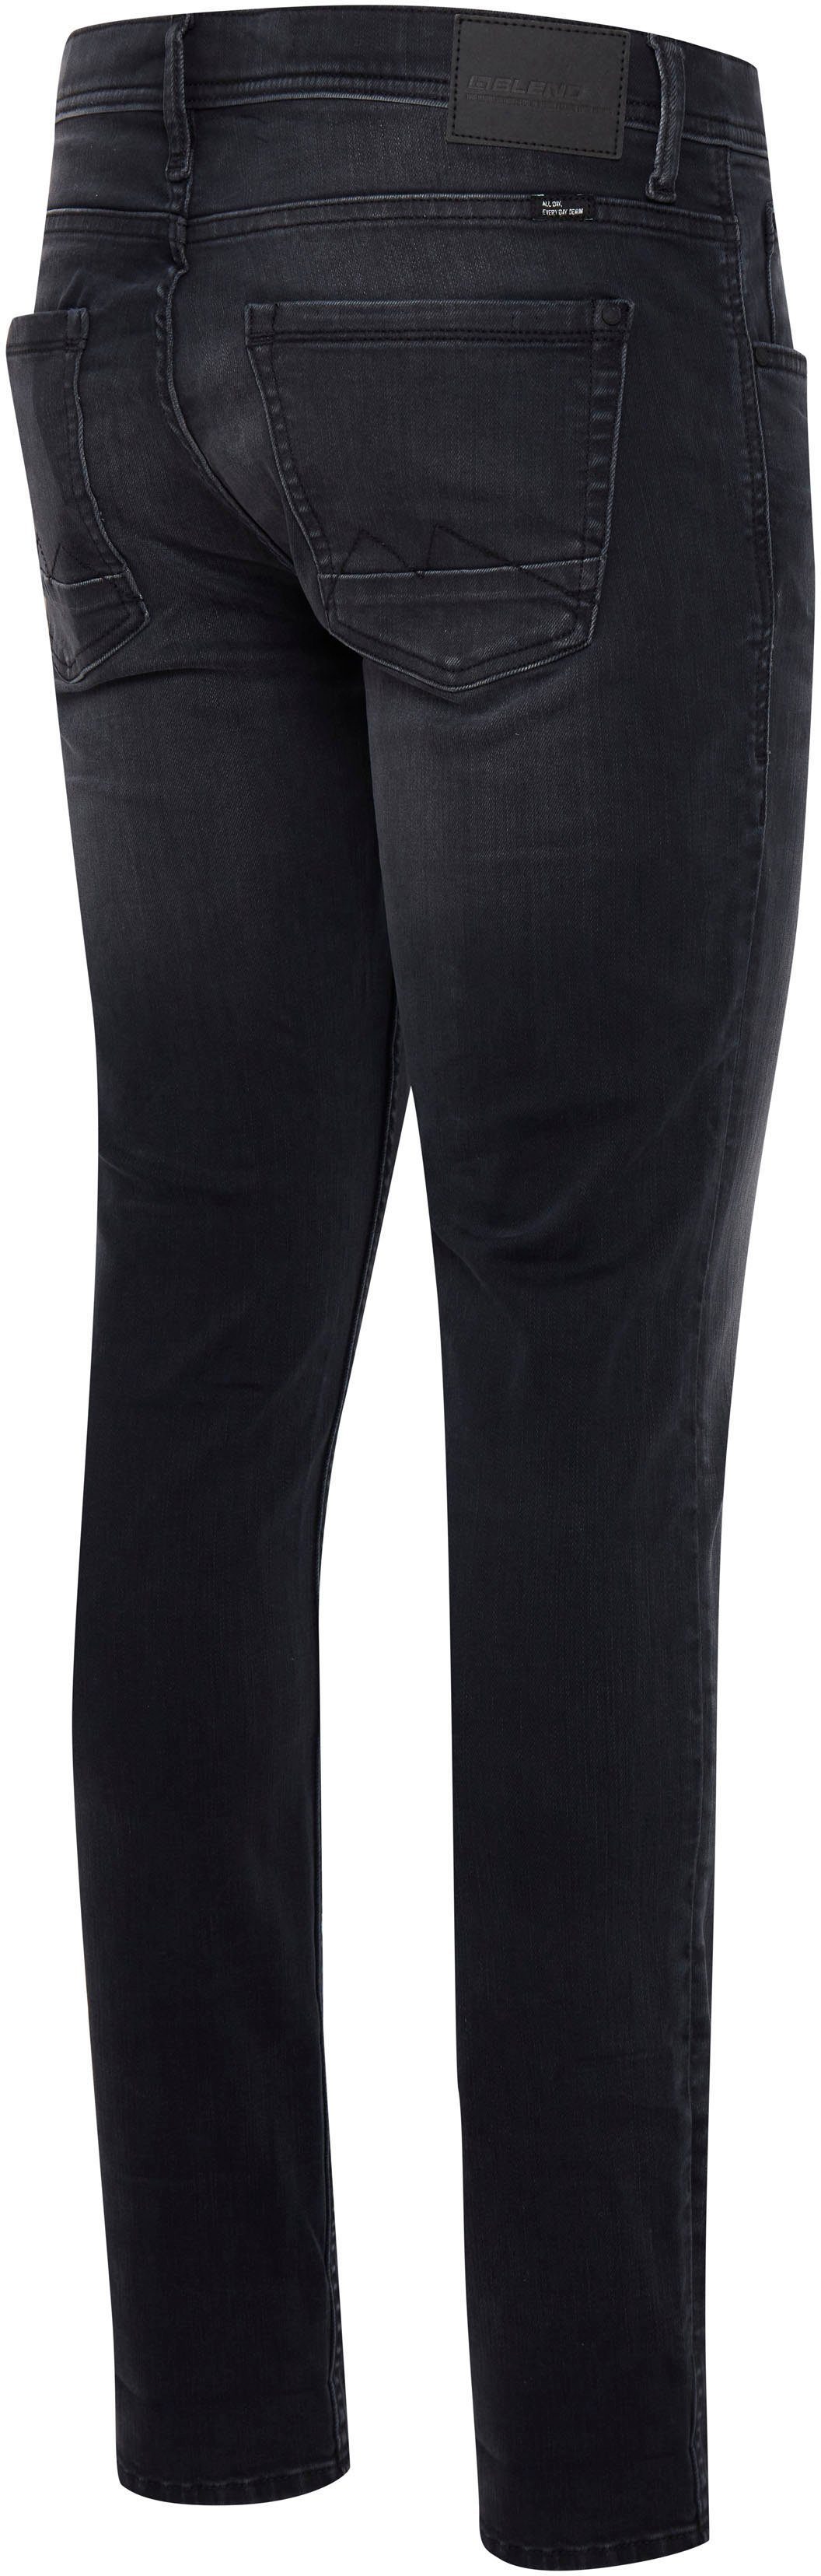 Blend Slim-fit-Jeans Jet Multiflex black washed